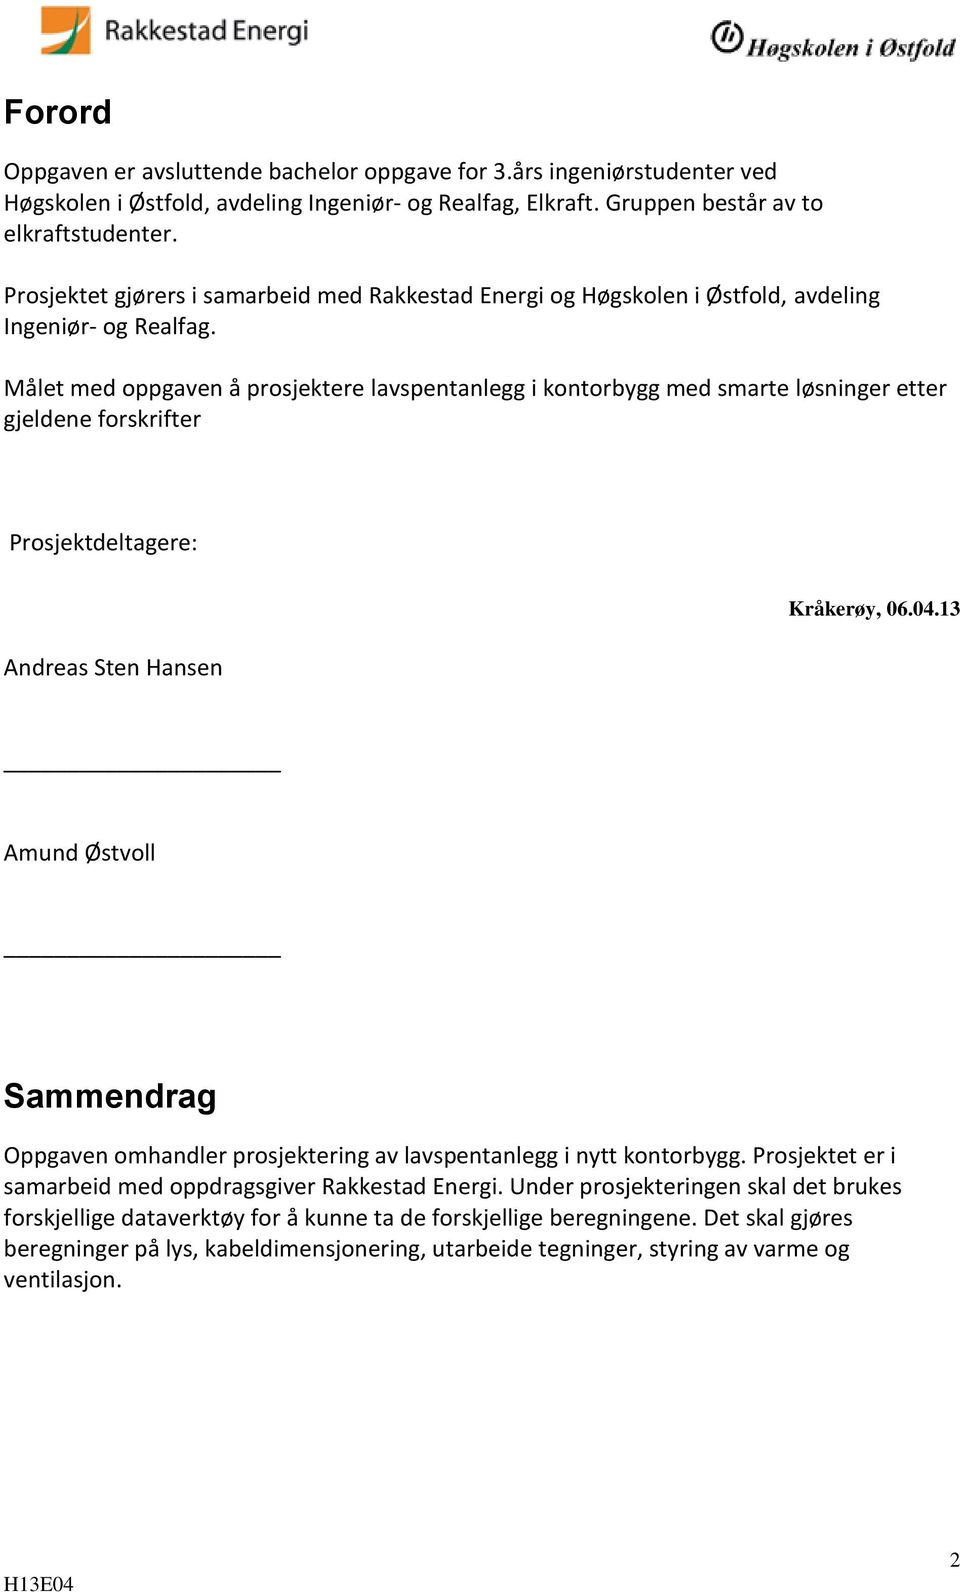 Målet med oppgaven å prosjektere lavspentanlegg i kontorbygg med smarte løsninger etter gjeldene forskrifter Prosjektdeltagere: Andreas Sten Hansen Kråkerøy, 06.04.